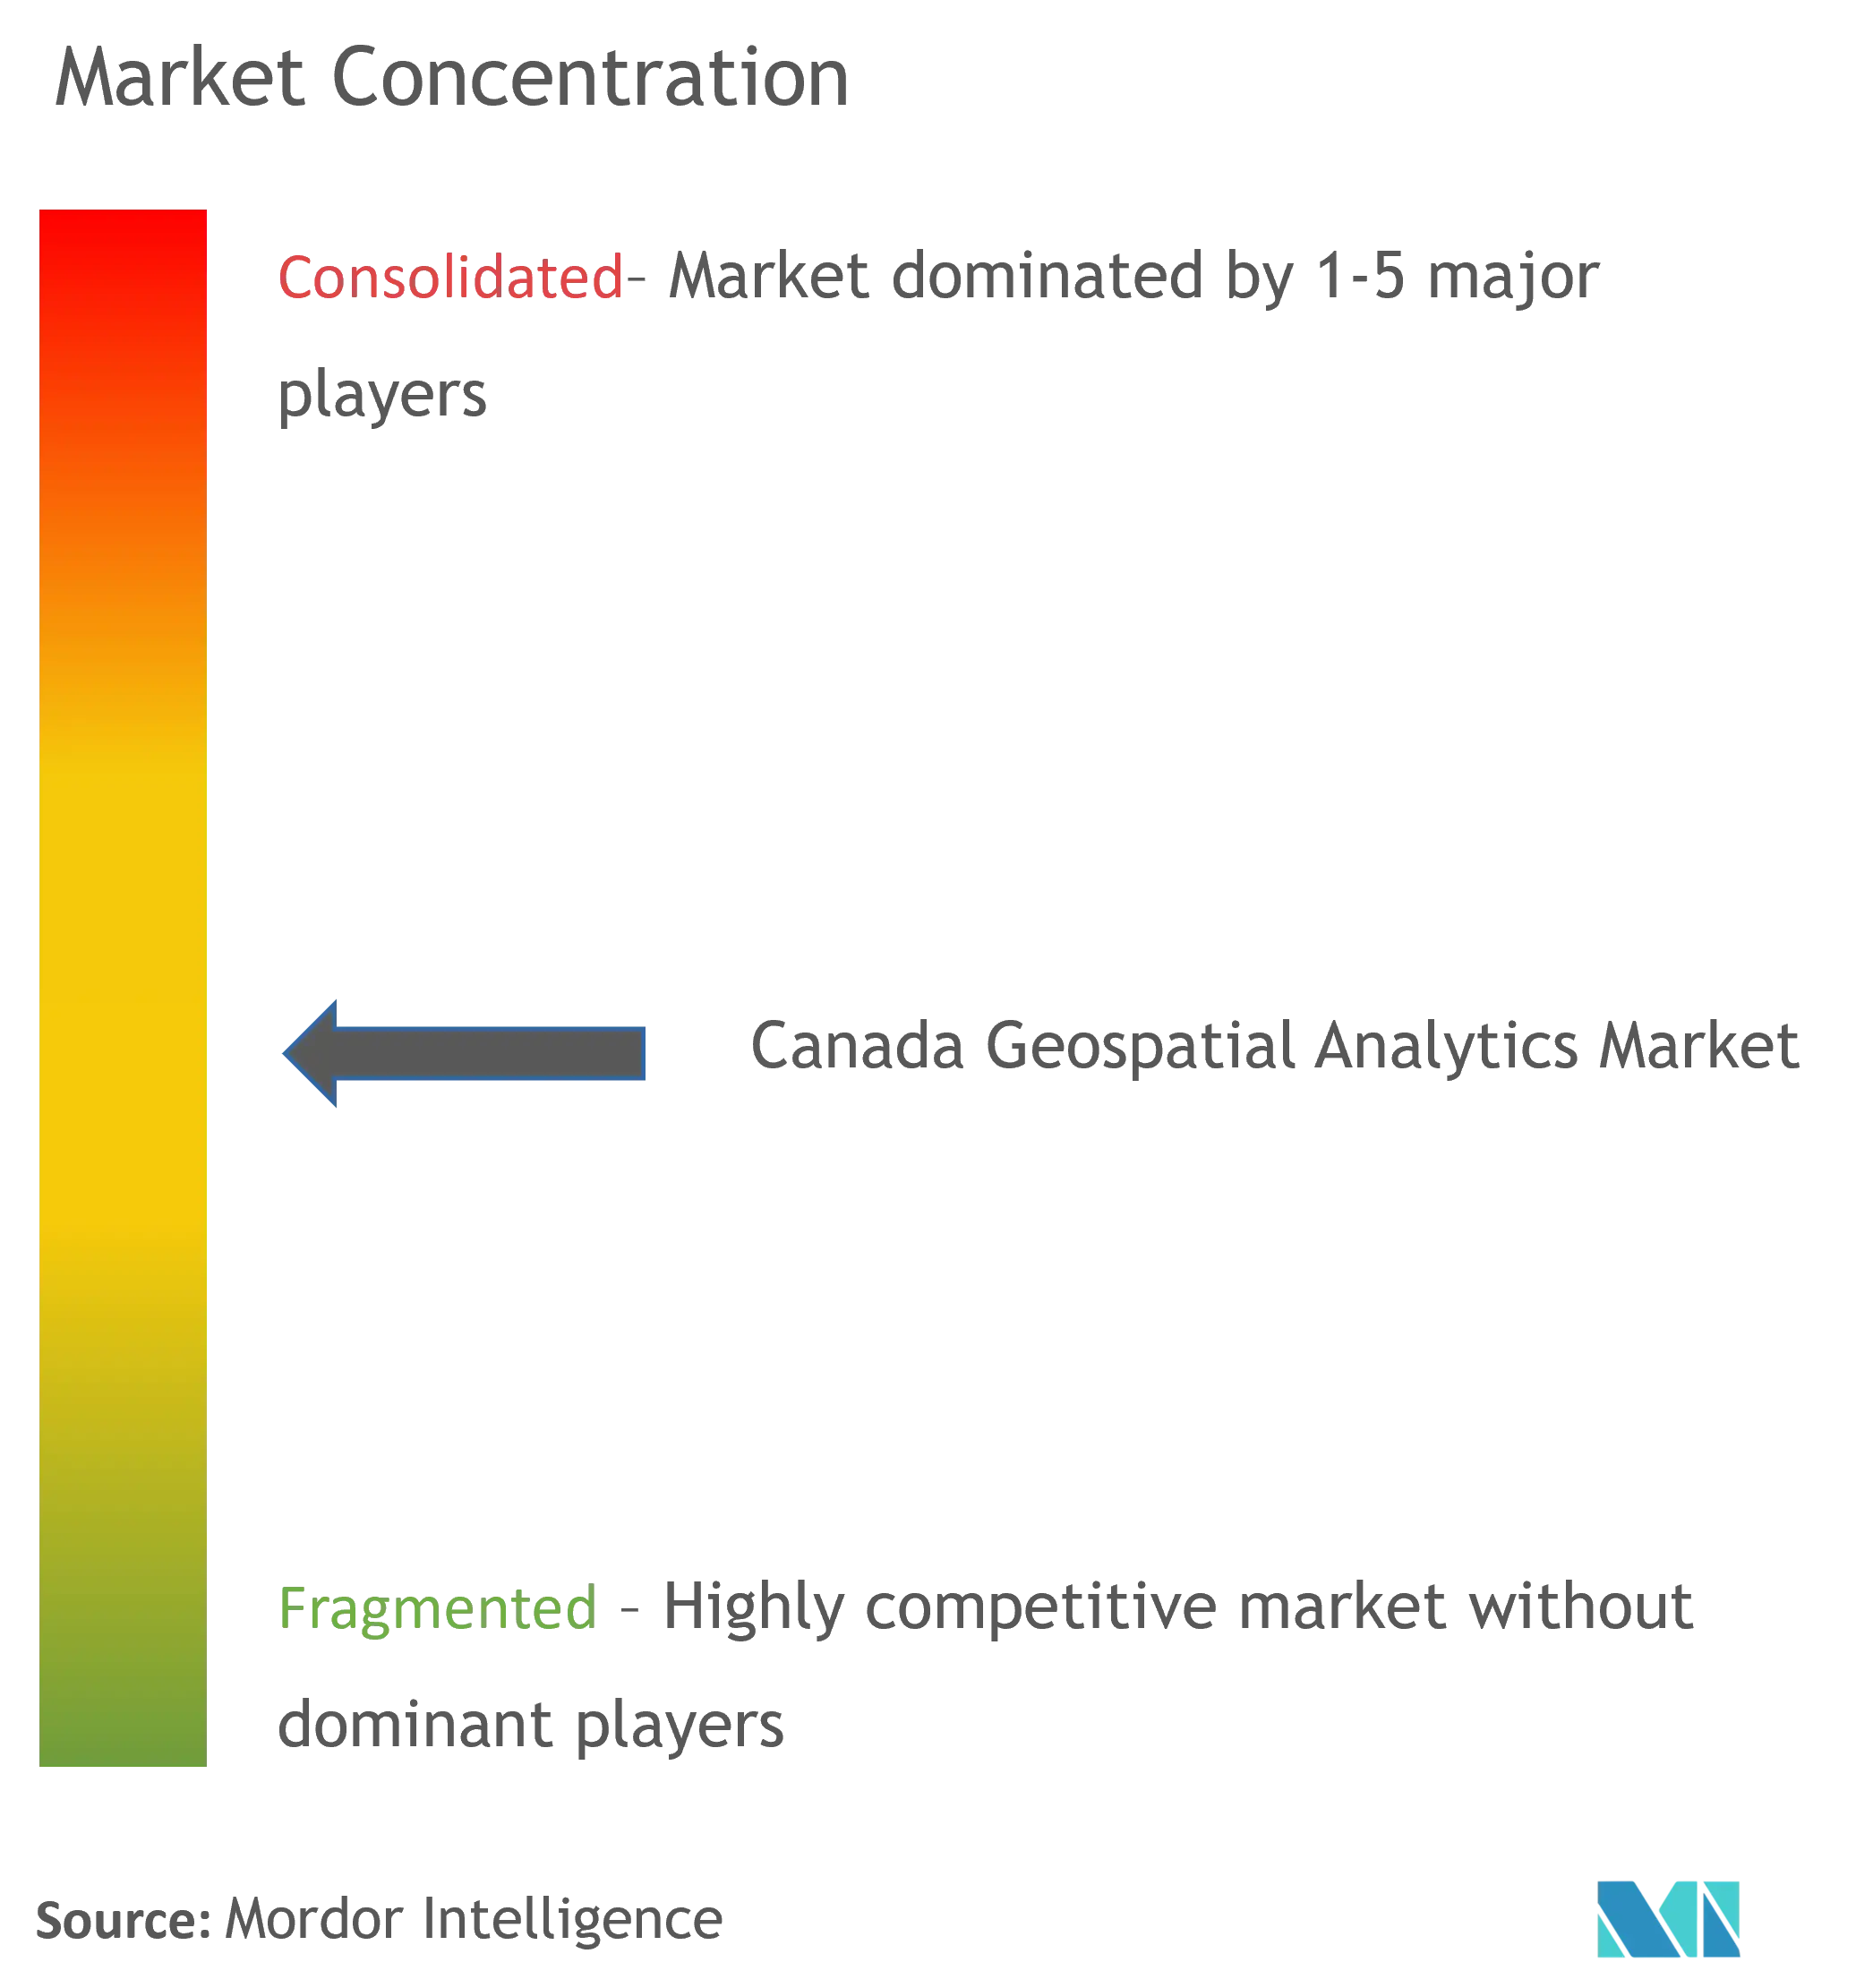 Canada Geospatial Analytics Market  Concentration